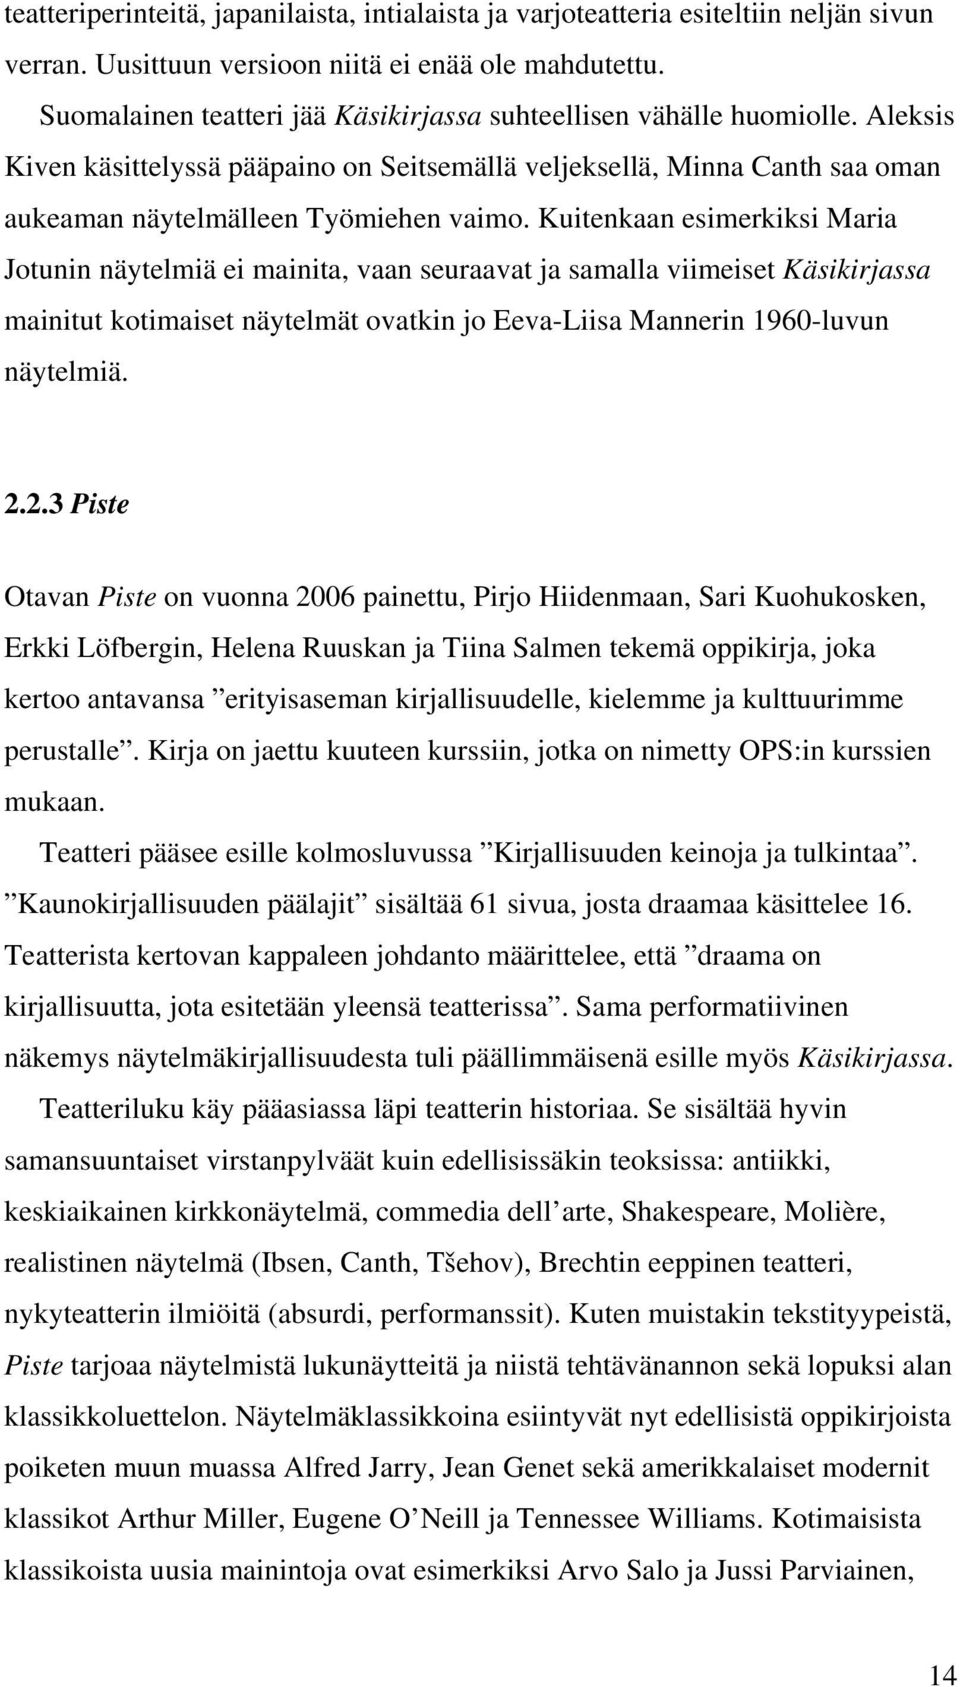 Kuitenkaan esimerkiksi Maria Jotunin näytelmiä ei mainita, vaan seuraavat ja samalla viimeiset Käsikirjassa mainitut kotimaiset näytelmät ovatkin jo Eeva-Liisa Mannerin 1960-luvun näytelmiä. 2.